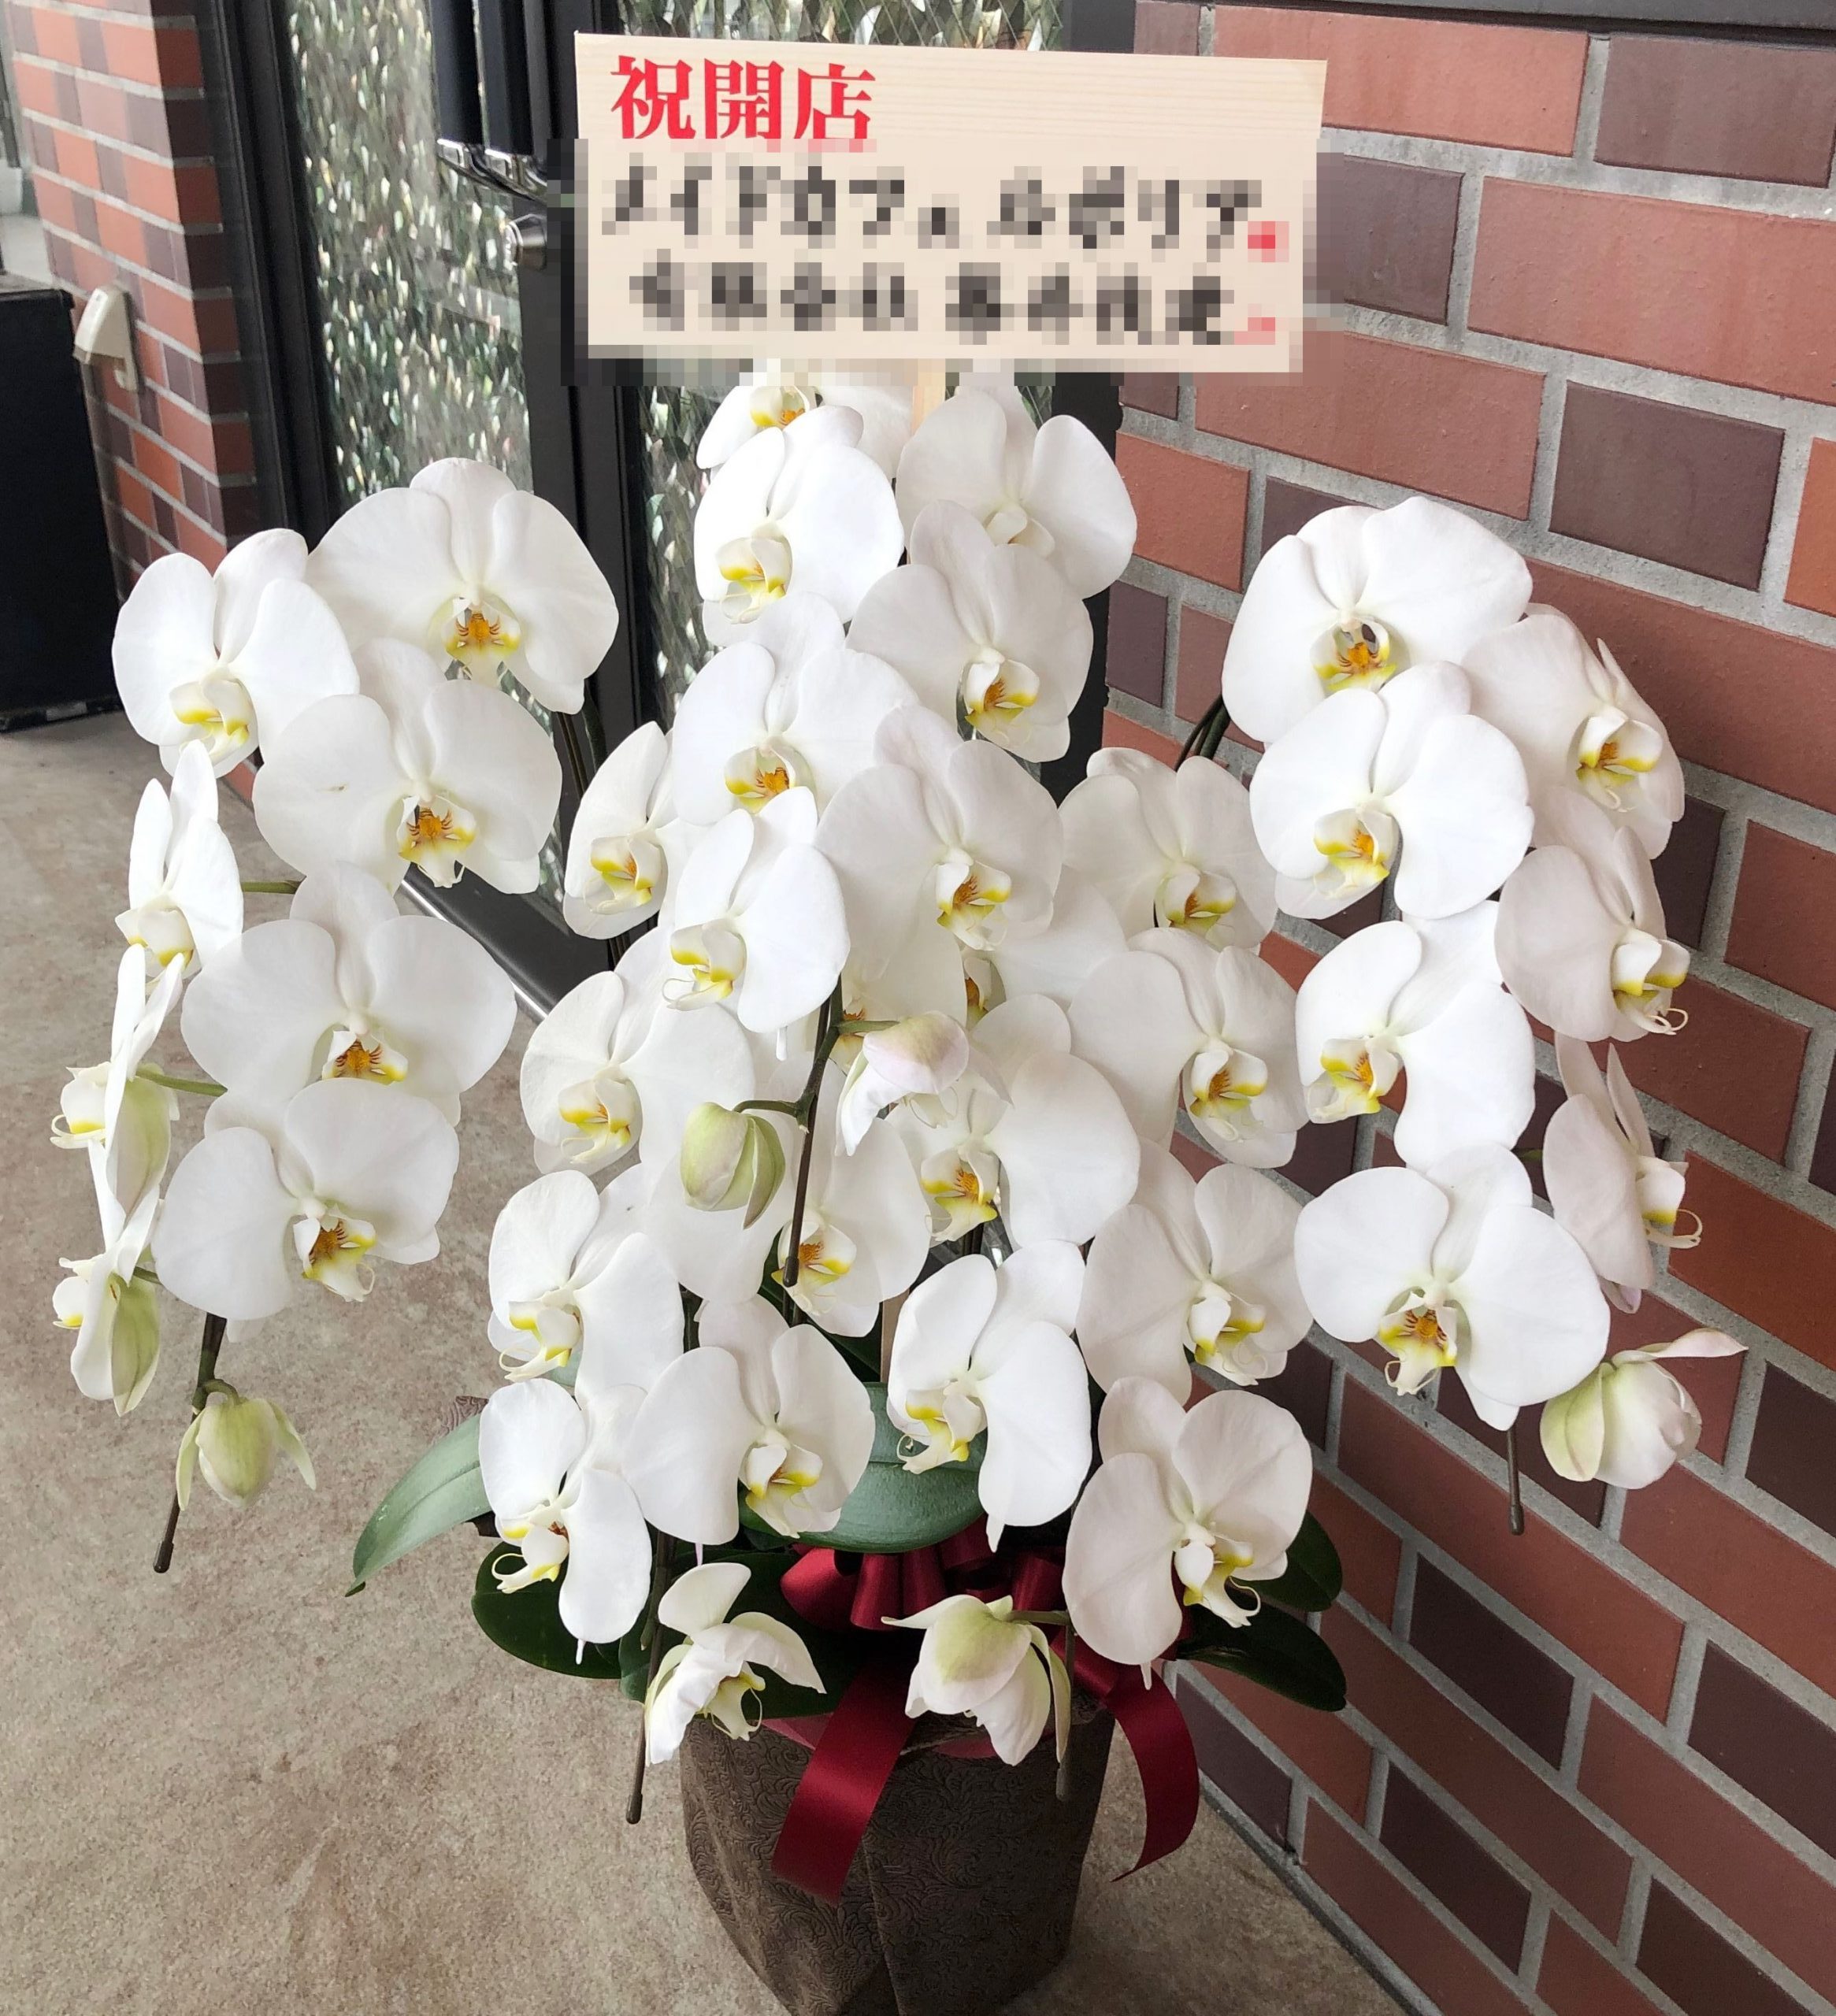 横浜市西区浅間町へ胡蝶蘭を配達しました。【横浜花屋の花束・スタンド花・胡蝶蘭・バルーン・アレンジメント配達事例589】